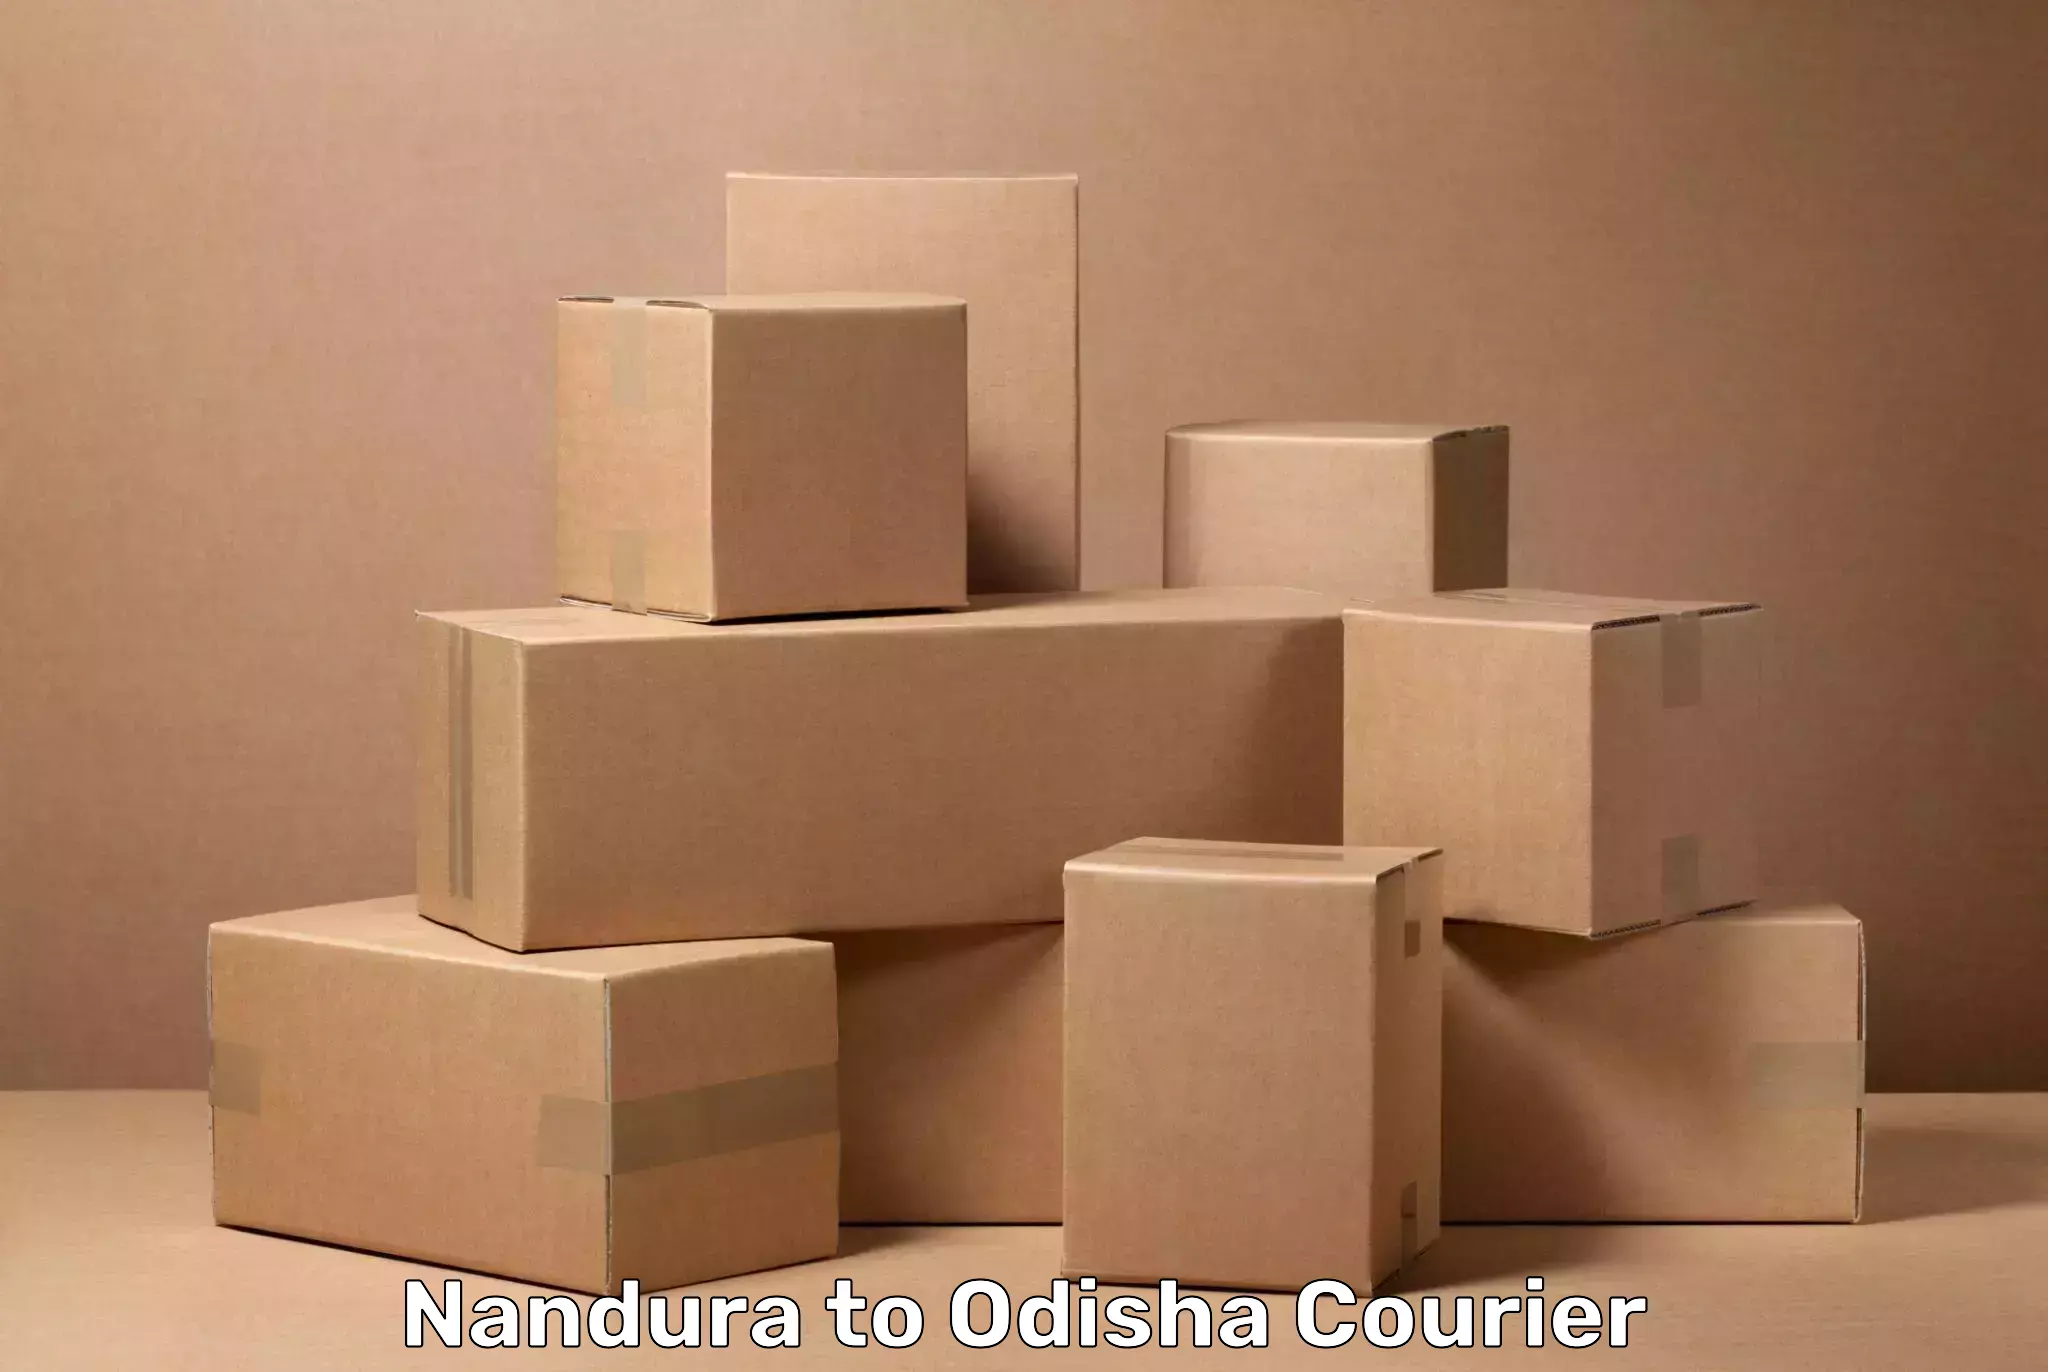 Emergency baggage service Nandura to Odisha